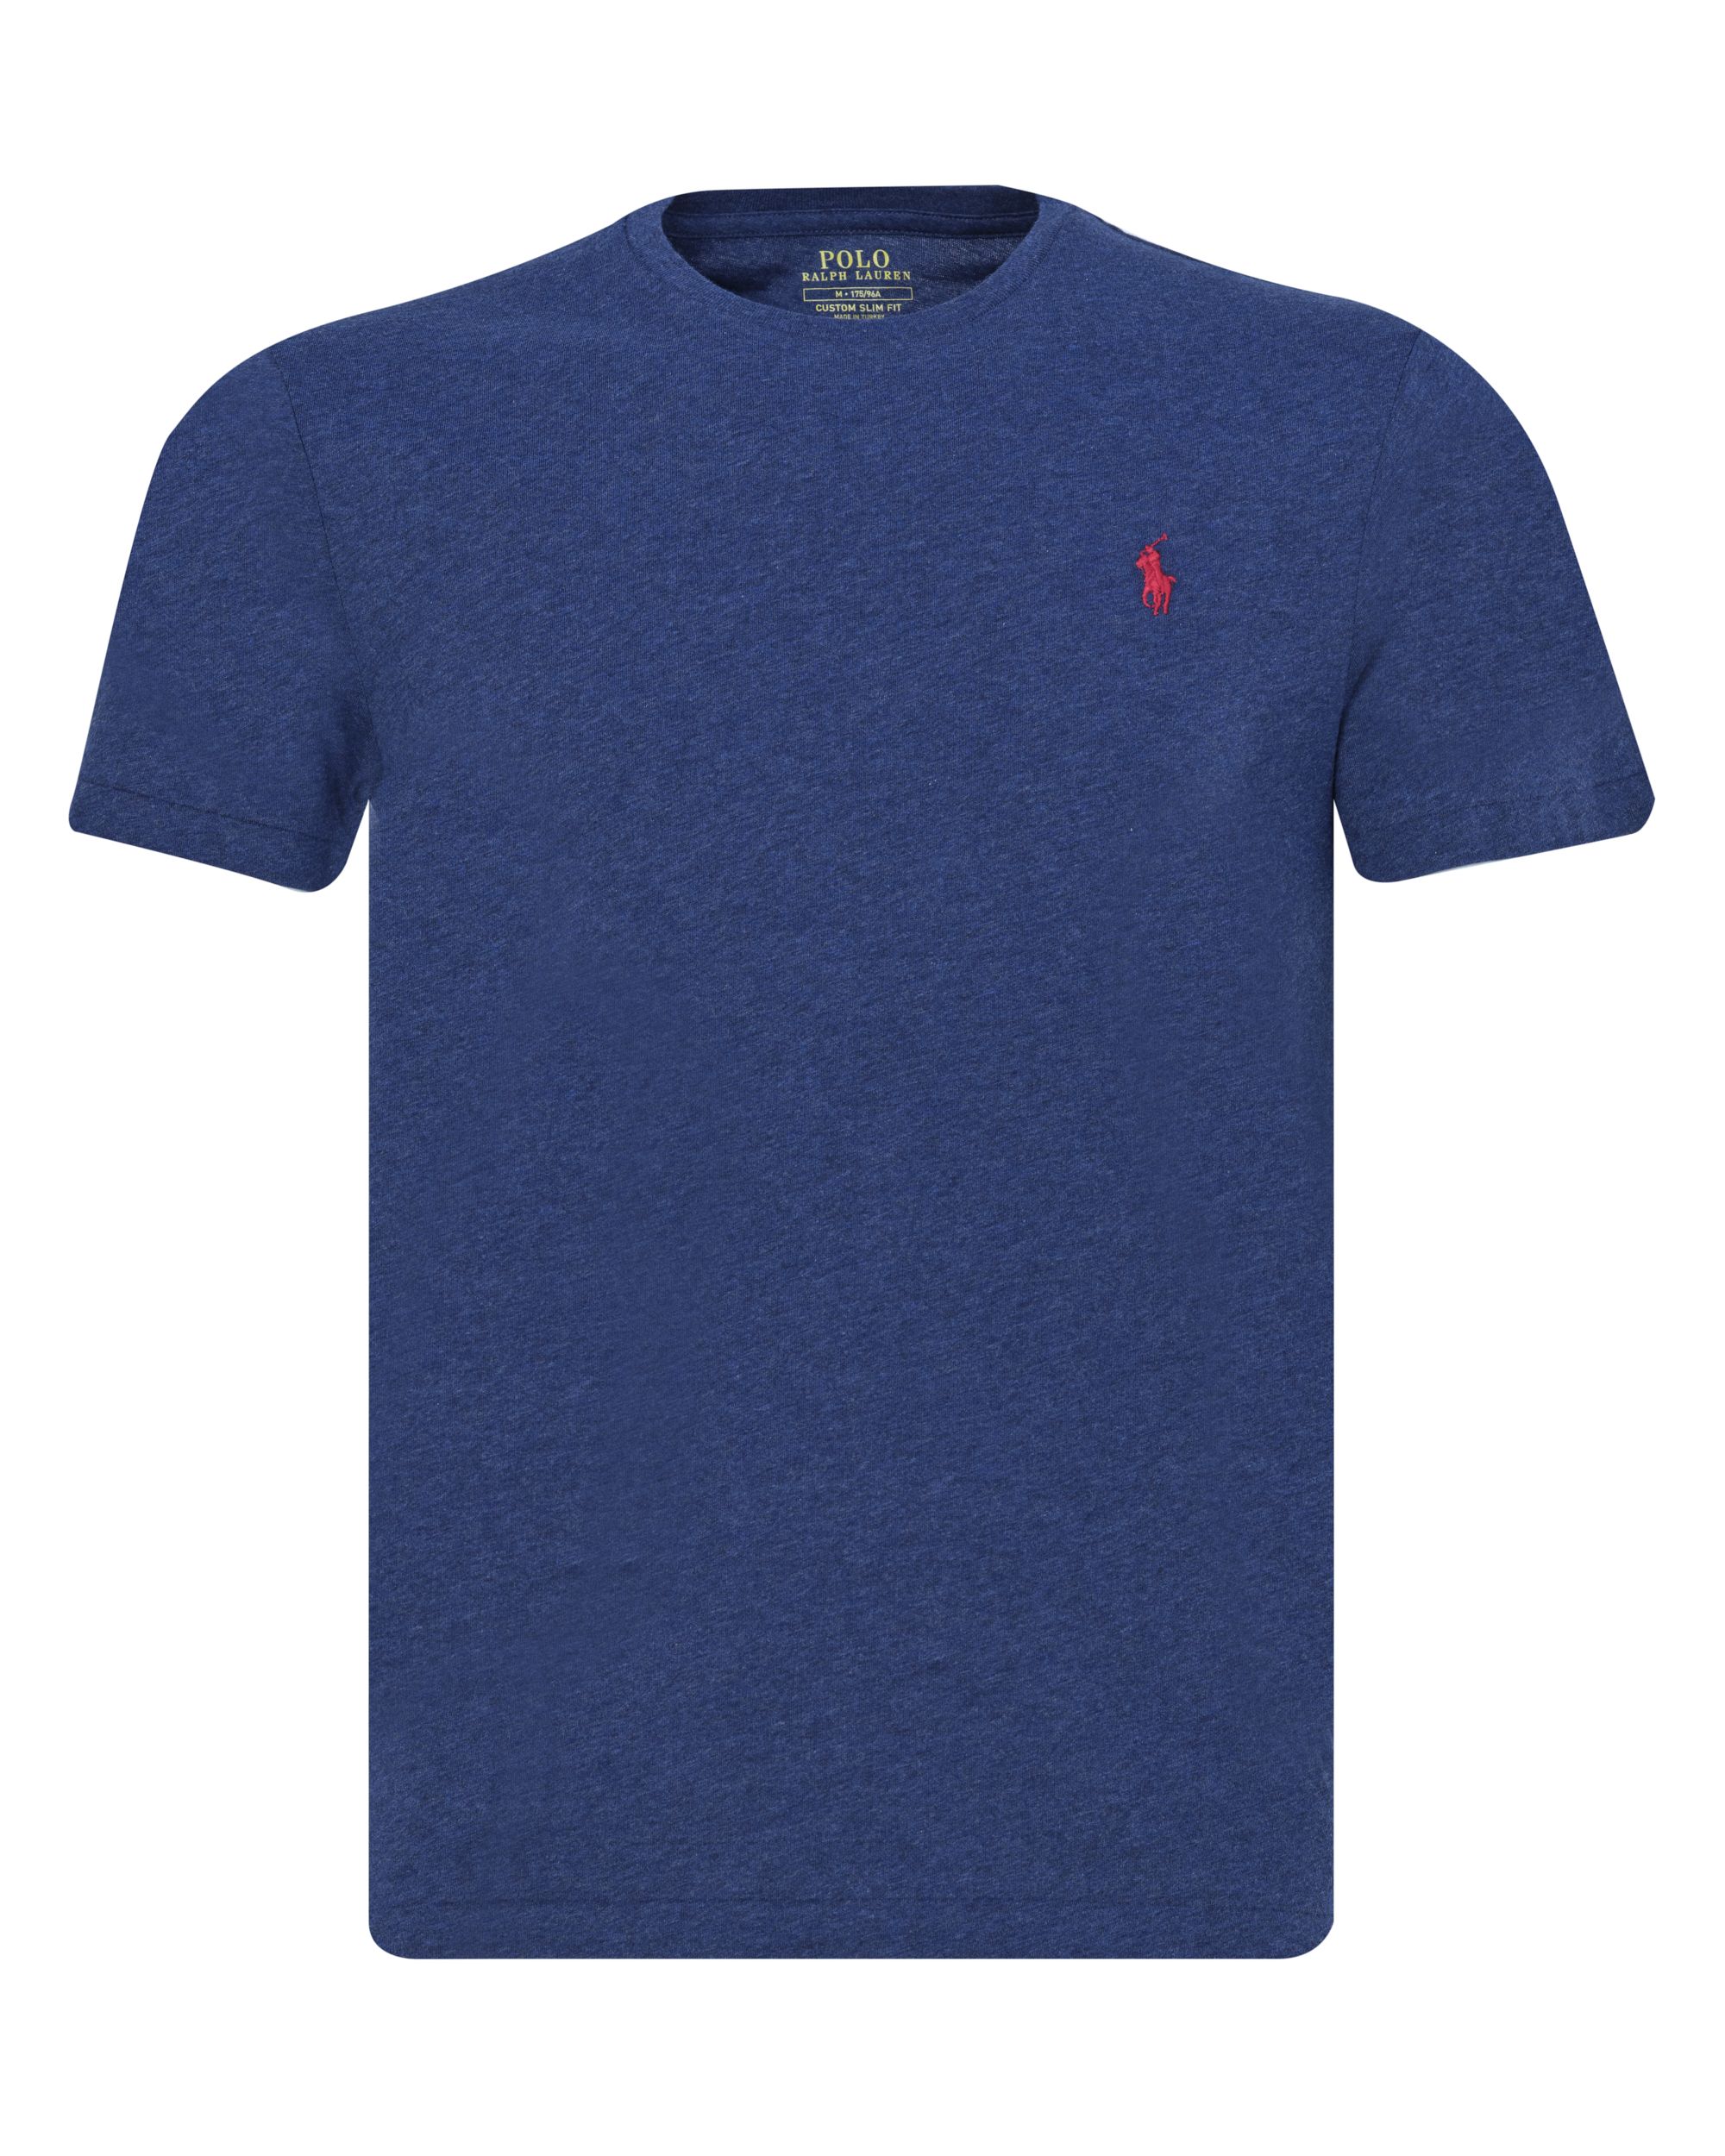 Polo Ralph Lauren T-shirt KM Donker blauw 080554-001-L